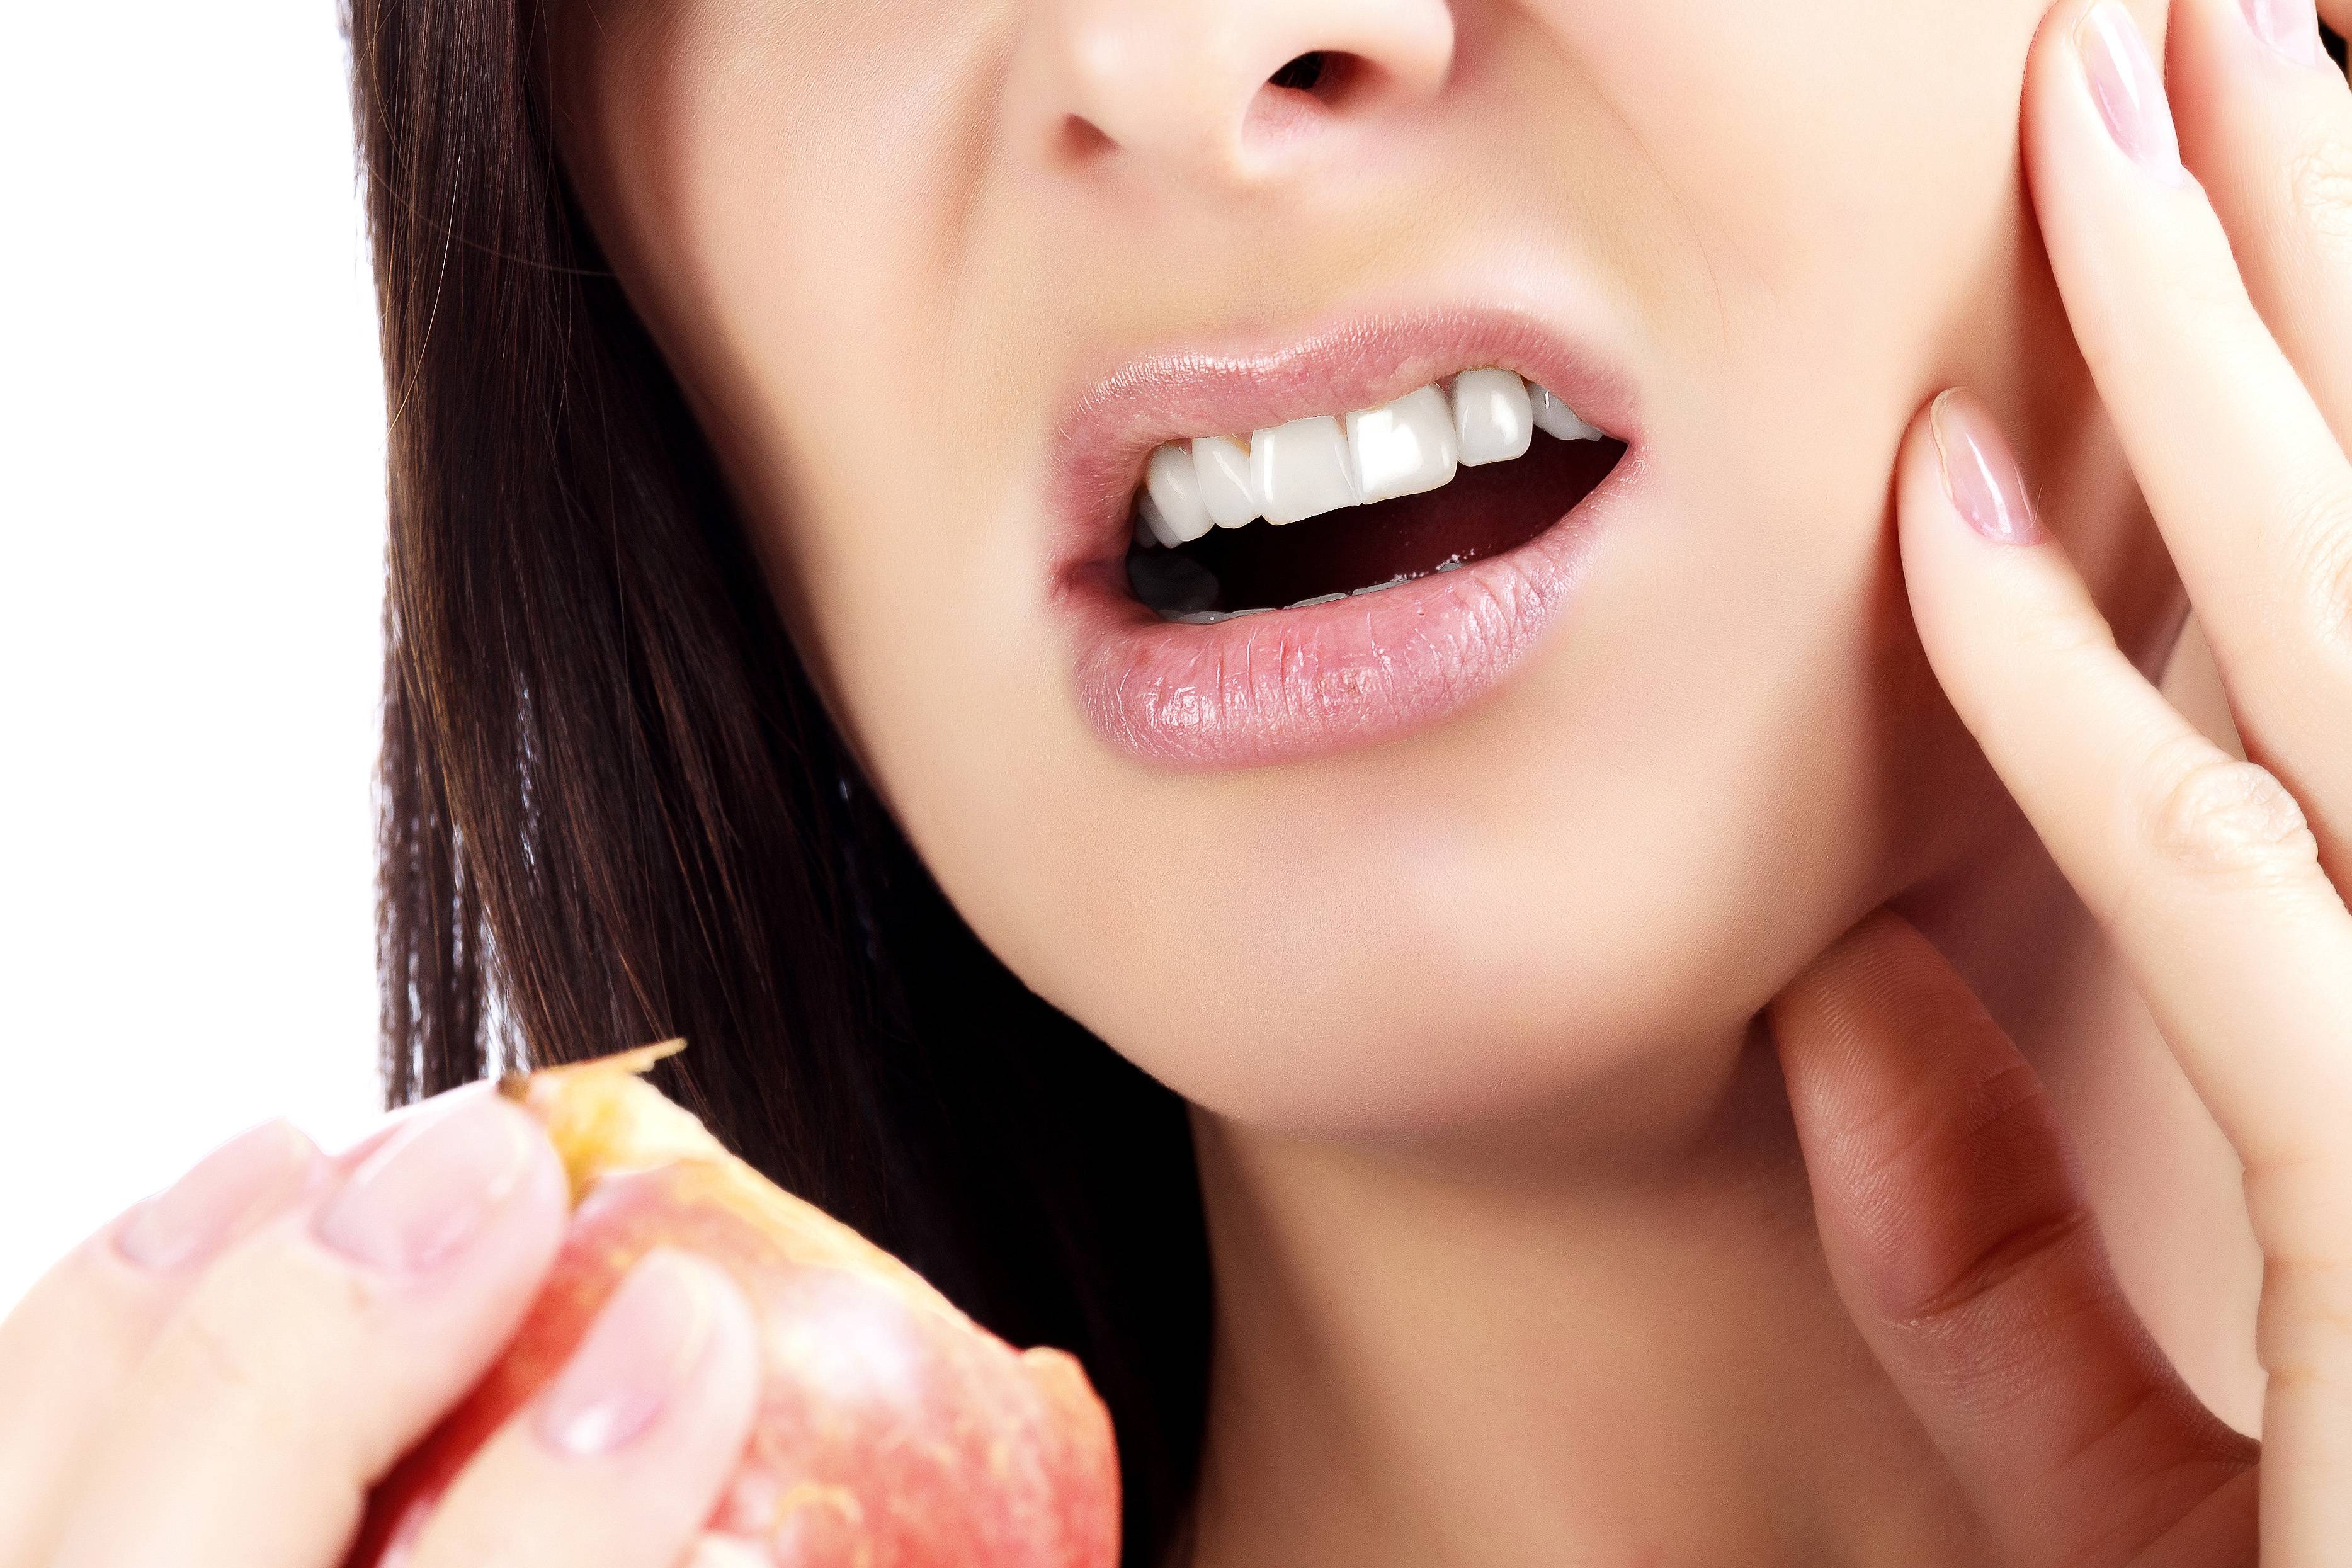  نکات رژیم غذایی برای جلوگیری از مشکلات دهان و دندان